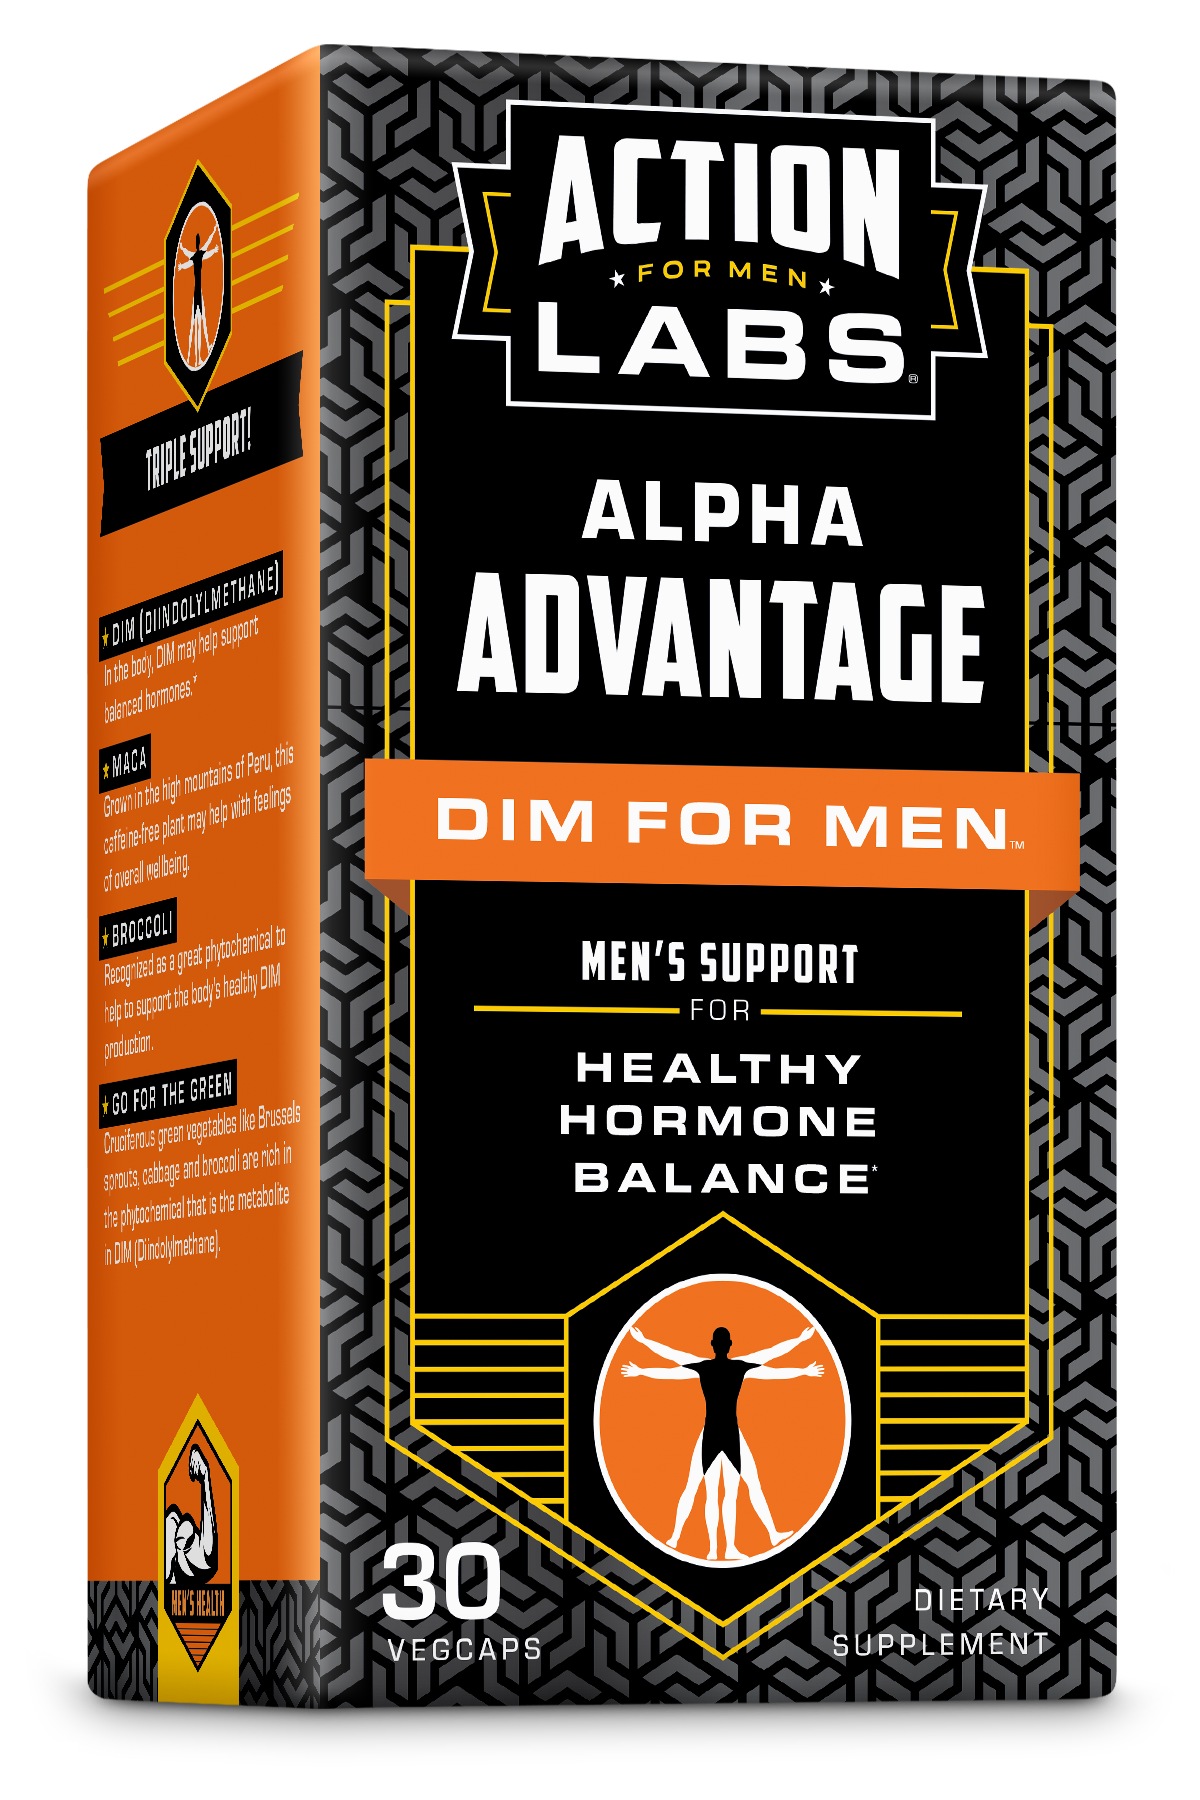 Action Labs, Alpha Advantage, Dim for Men